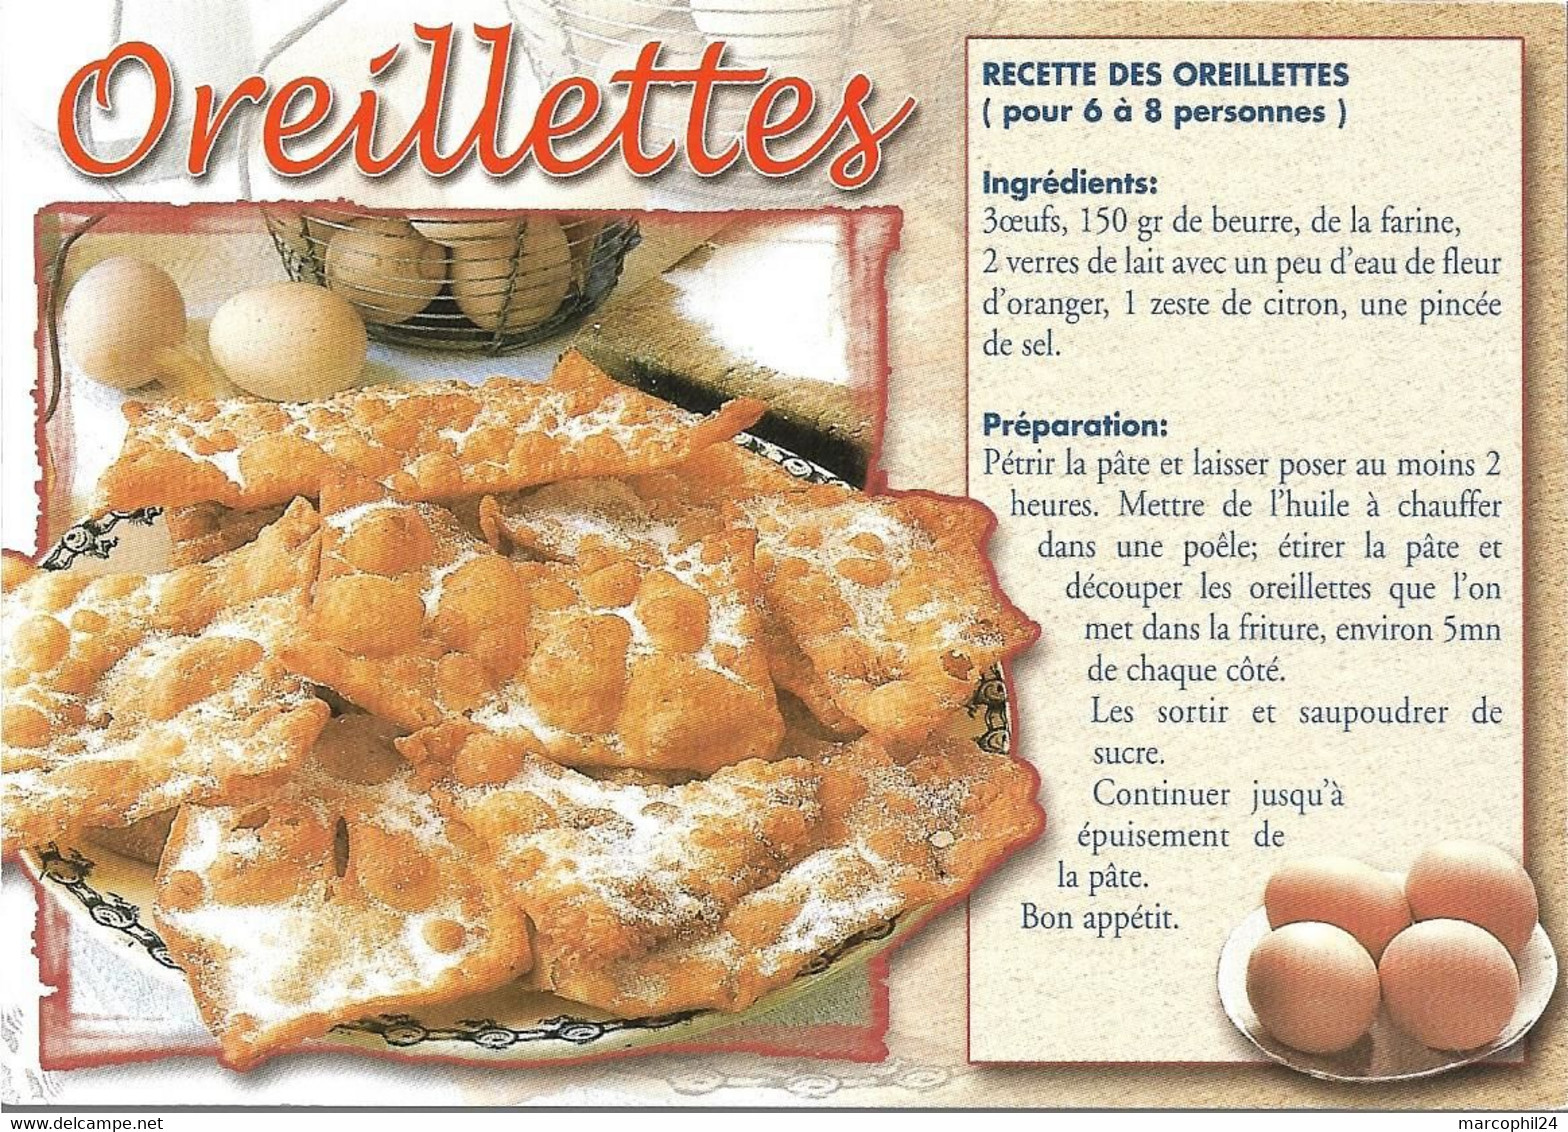 TRADITIONS + Carte Postale Neuve : RECETTE - OREILLETTES + AS DE COEUR 19 059 - Recettes (cuisine)